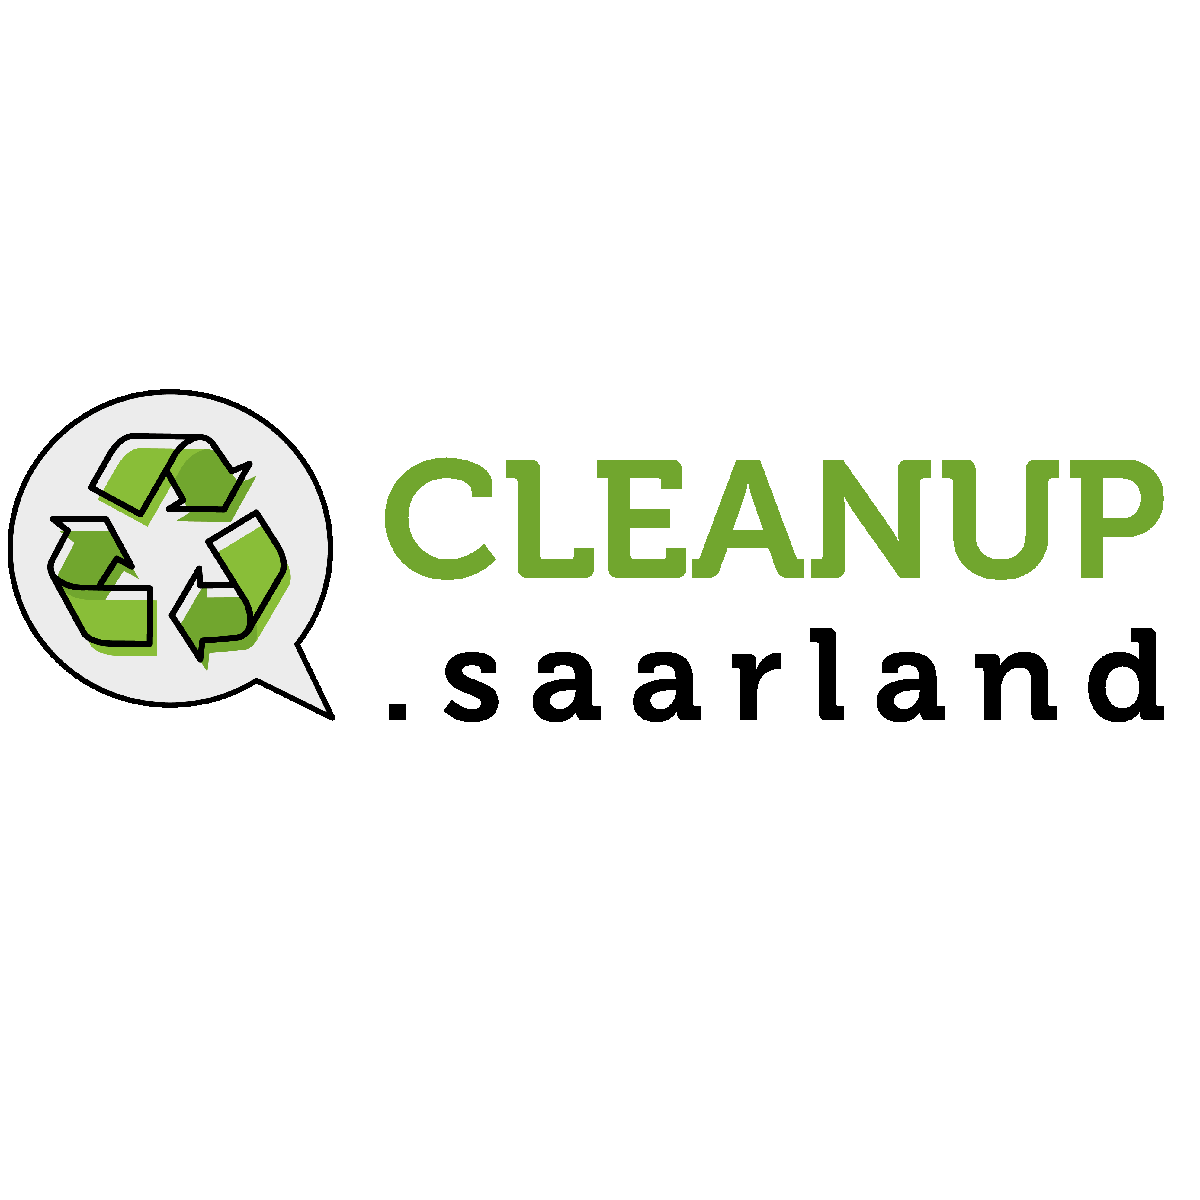 cleanup saarland